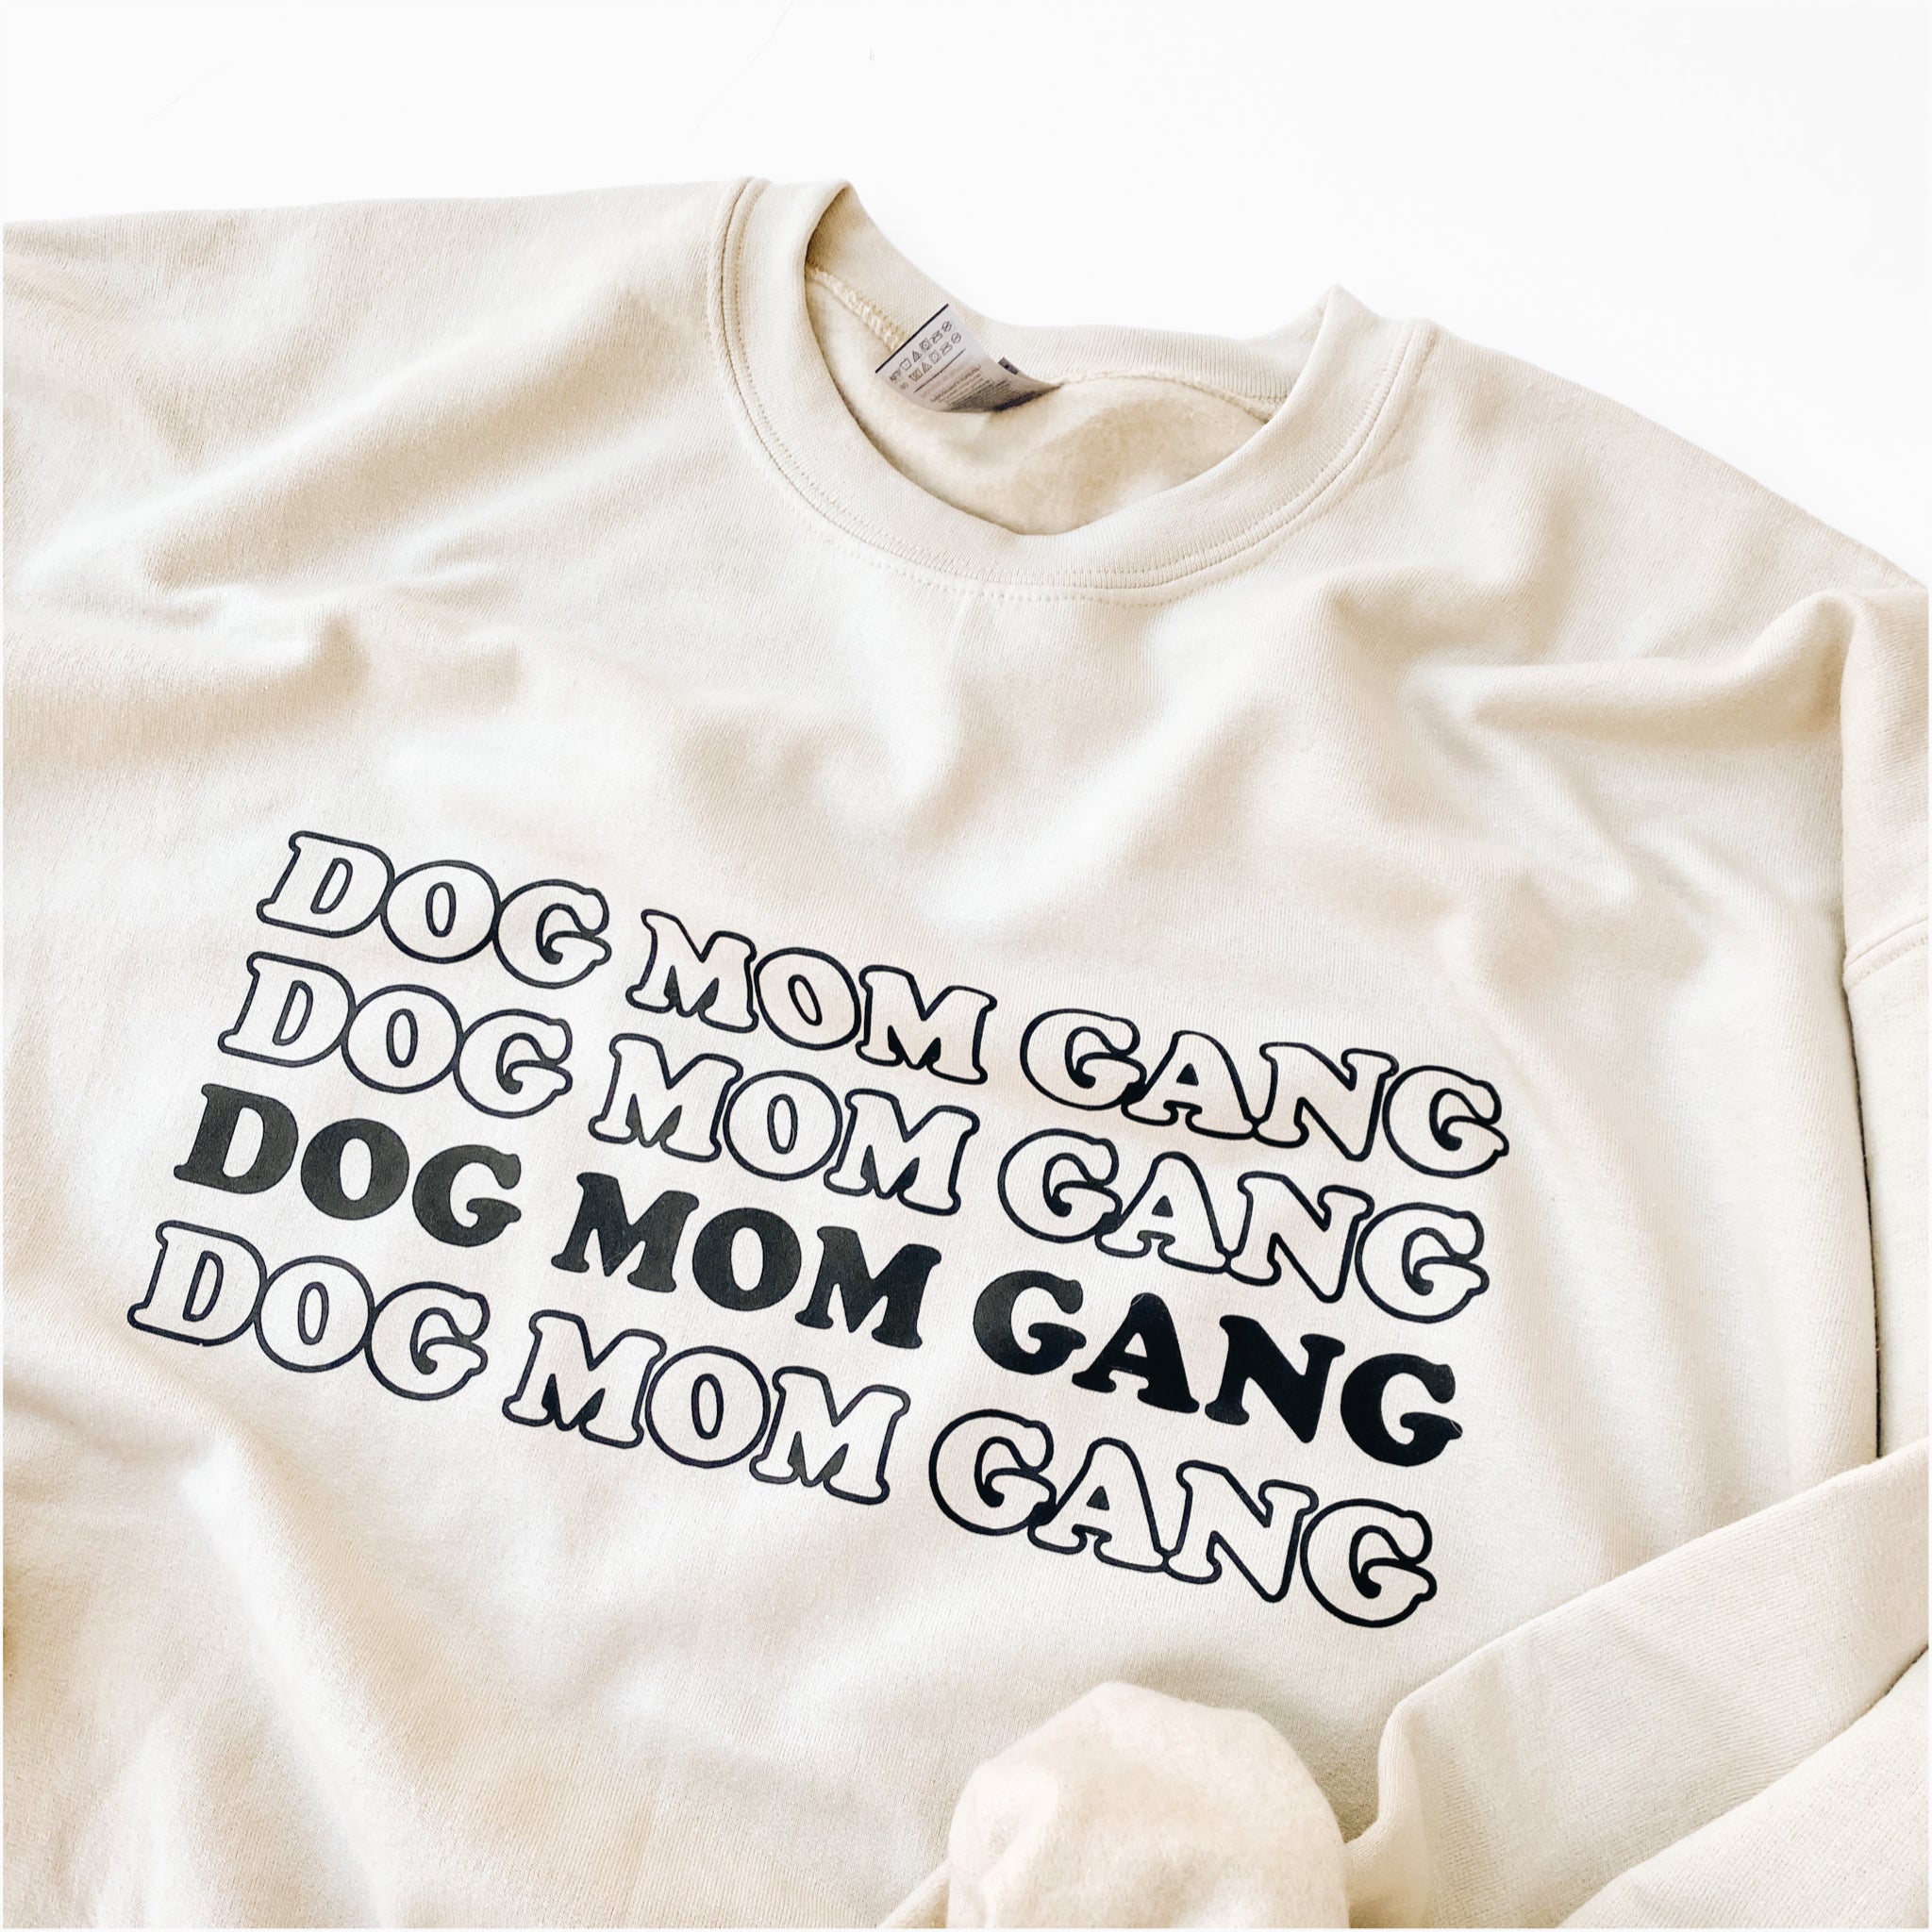 "dog mom gang" crewneck